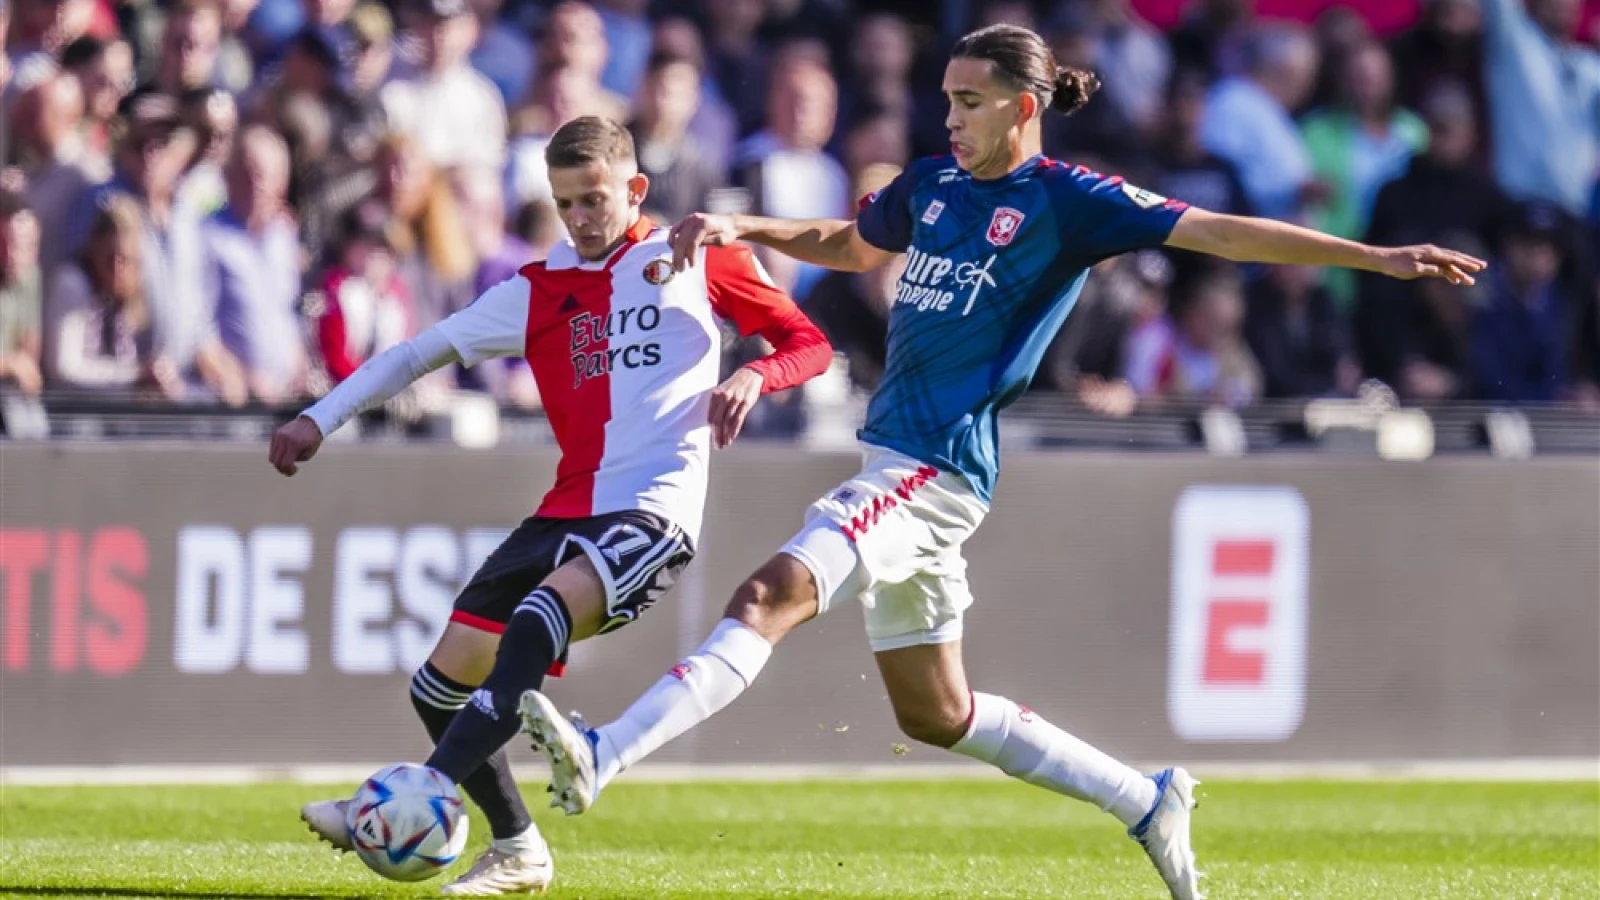 LIVE | Feyenoord - FC Twente 2-0 | Einde wedstrijd